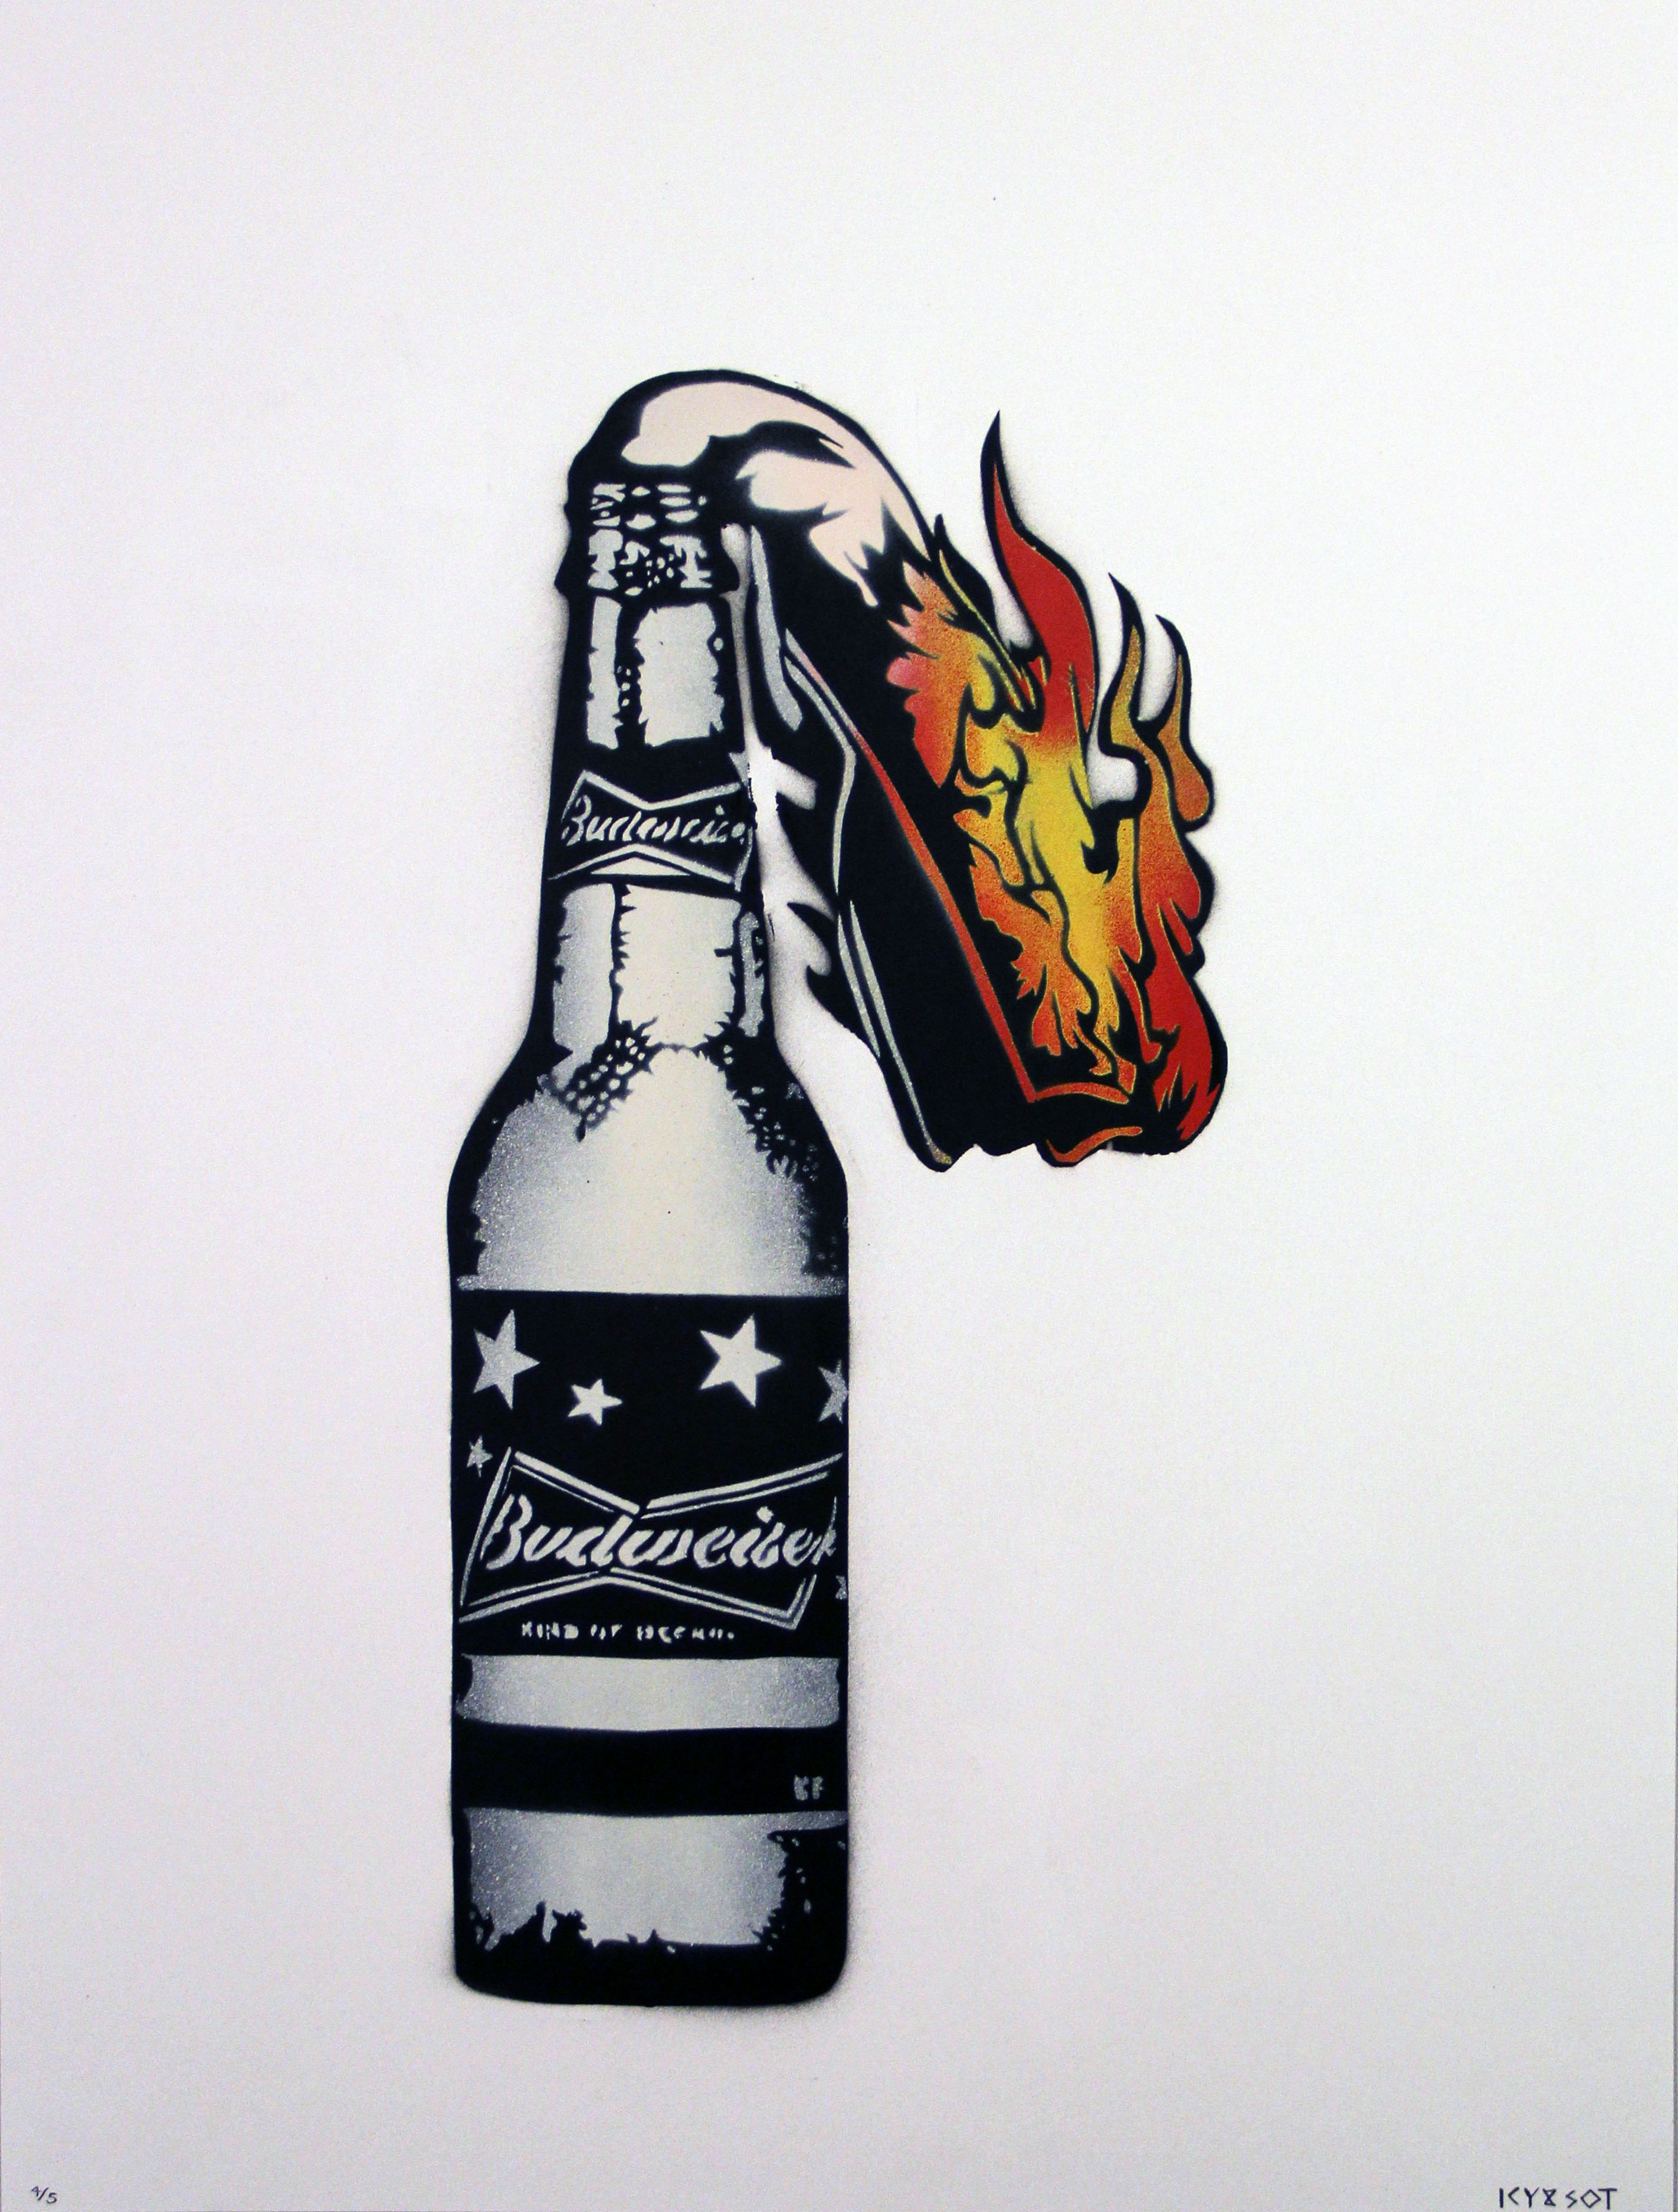 portrait display, Artwork, Digital art, Graffiti, Molotov, Budweiser, Bottles, Beer, Fire, White background Wallpaper